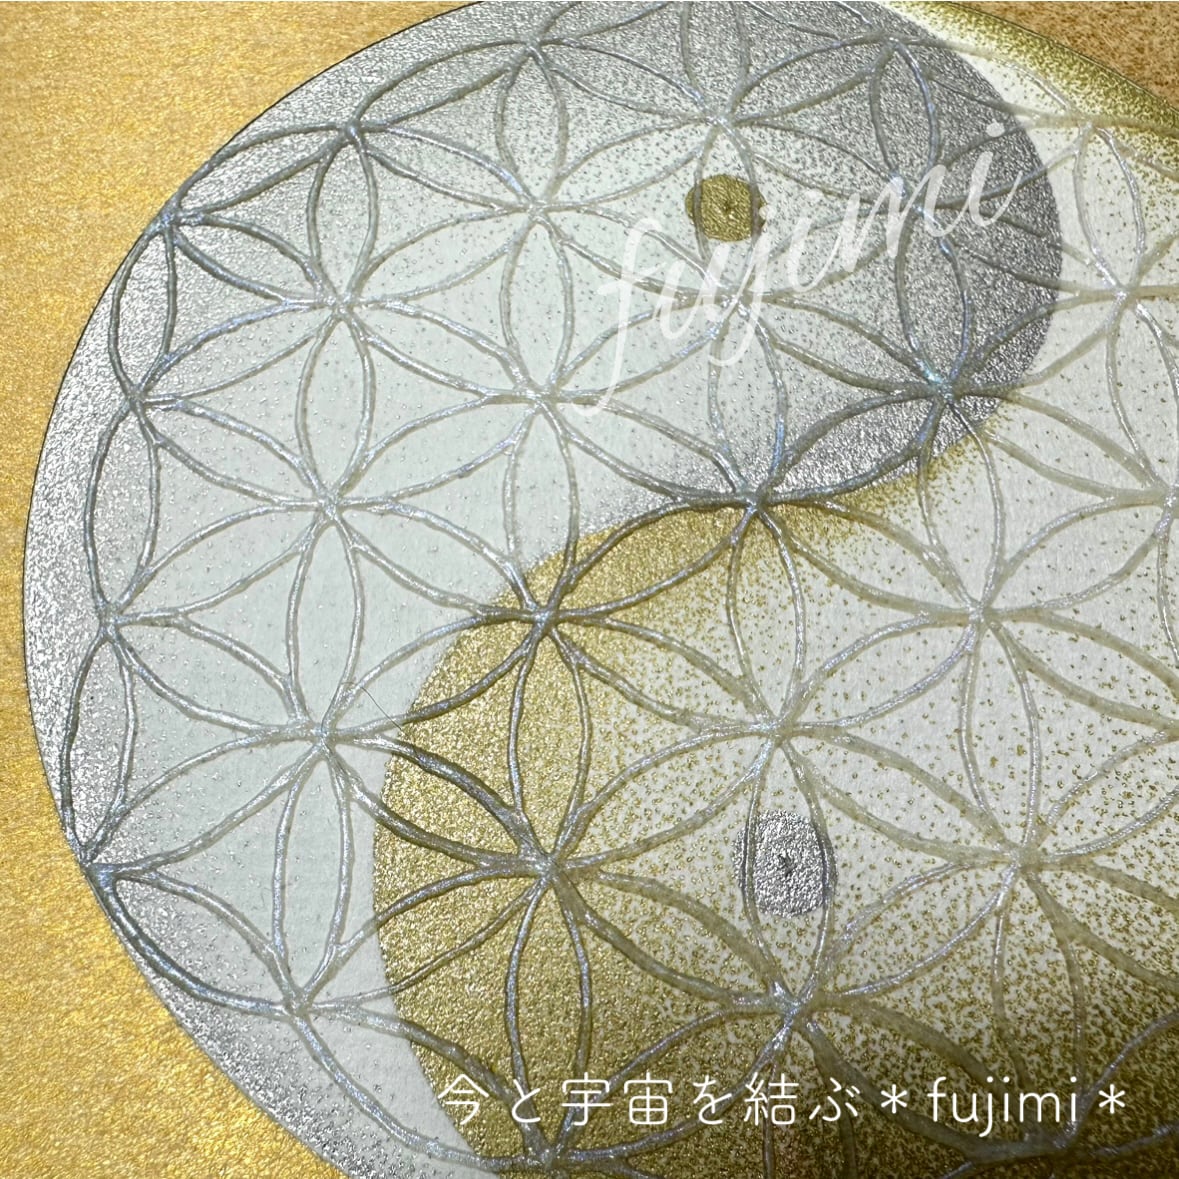 幸運アート【金縁の陰陽太極図フラワーオブライフ・点描画/神聖